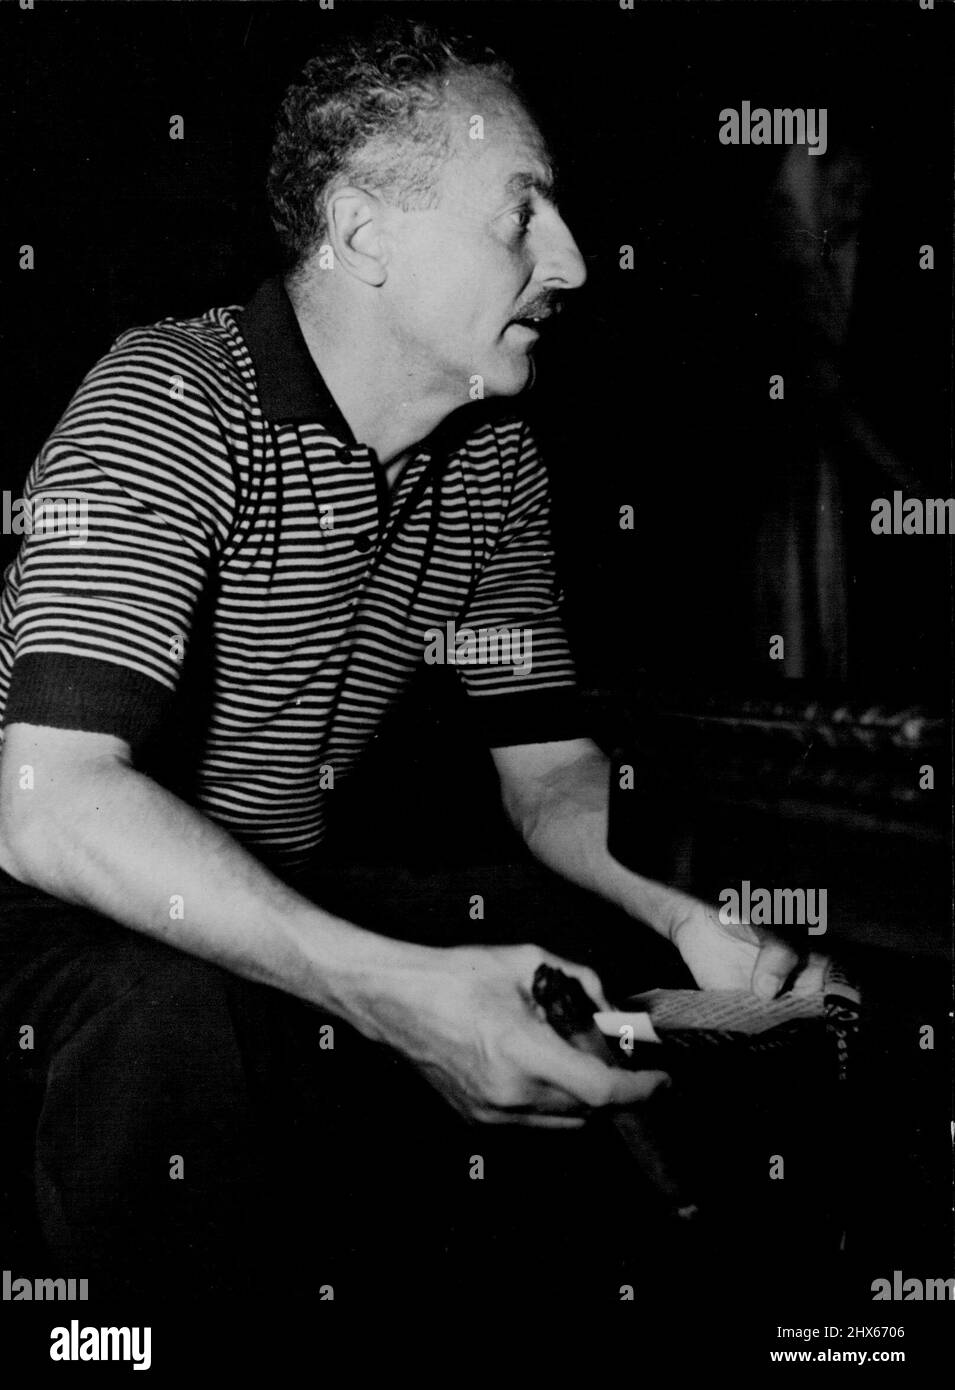 Darryl Zanuck - Capo della Fox del Novecento, produttore leader di film hollywoodiani. Ama indossare maglie a maniche corte, fumare sigari grandi, ha uno dei redditi più alti nel mondo. Dicembre 20, 1948. (Foto con fotocamera premere). Foto Stock